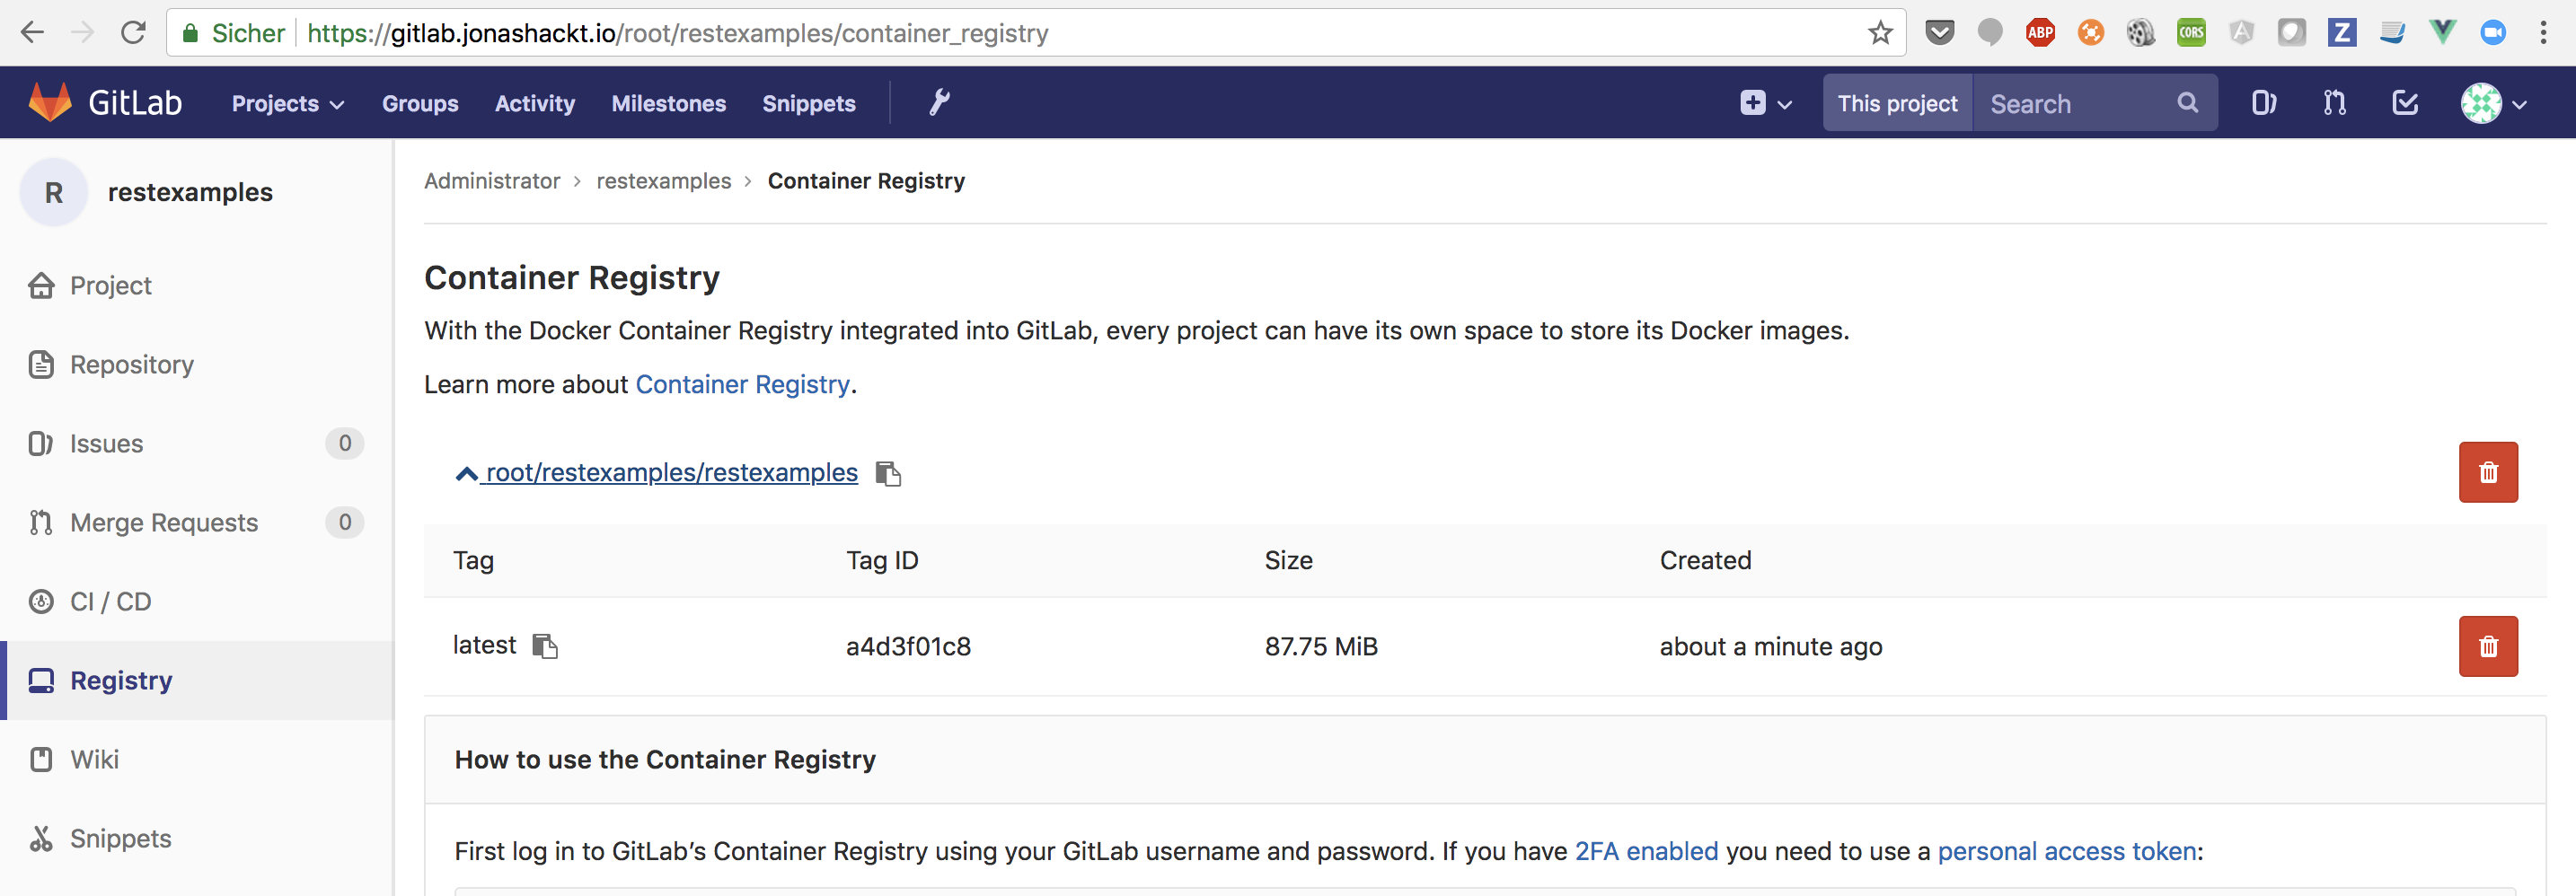 gitlab-registry-overview